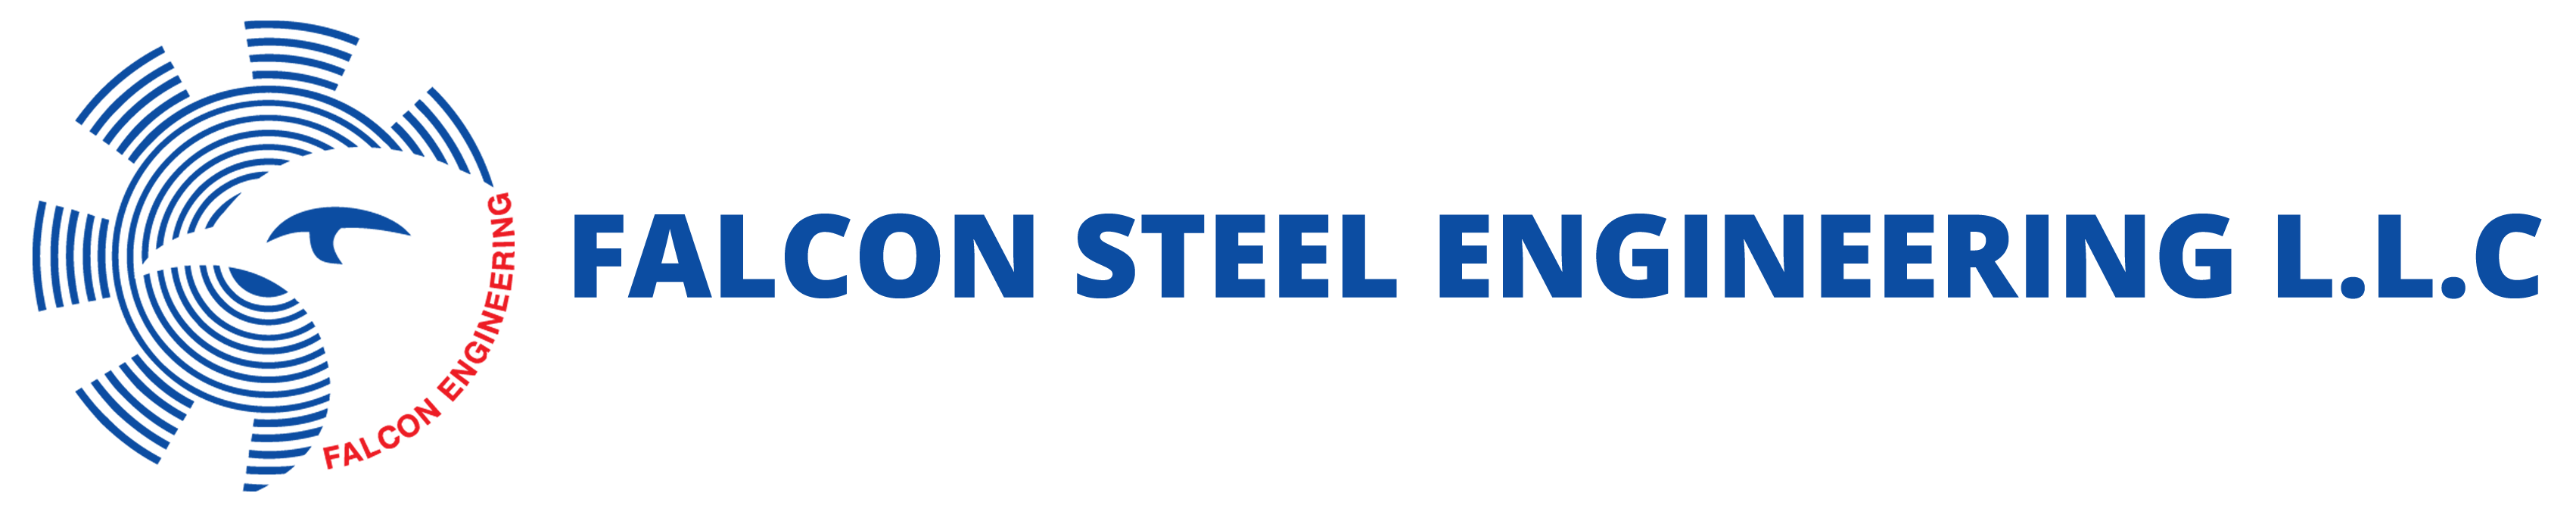 Falcon Steel Engineering LLC